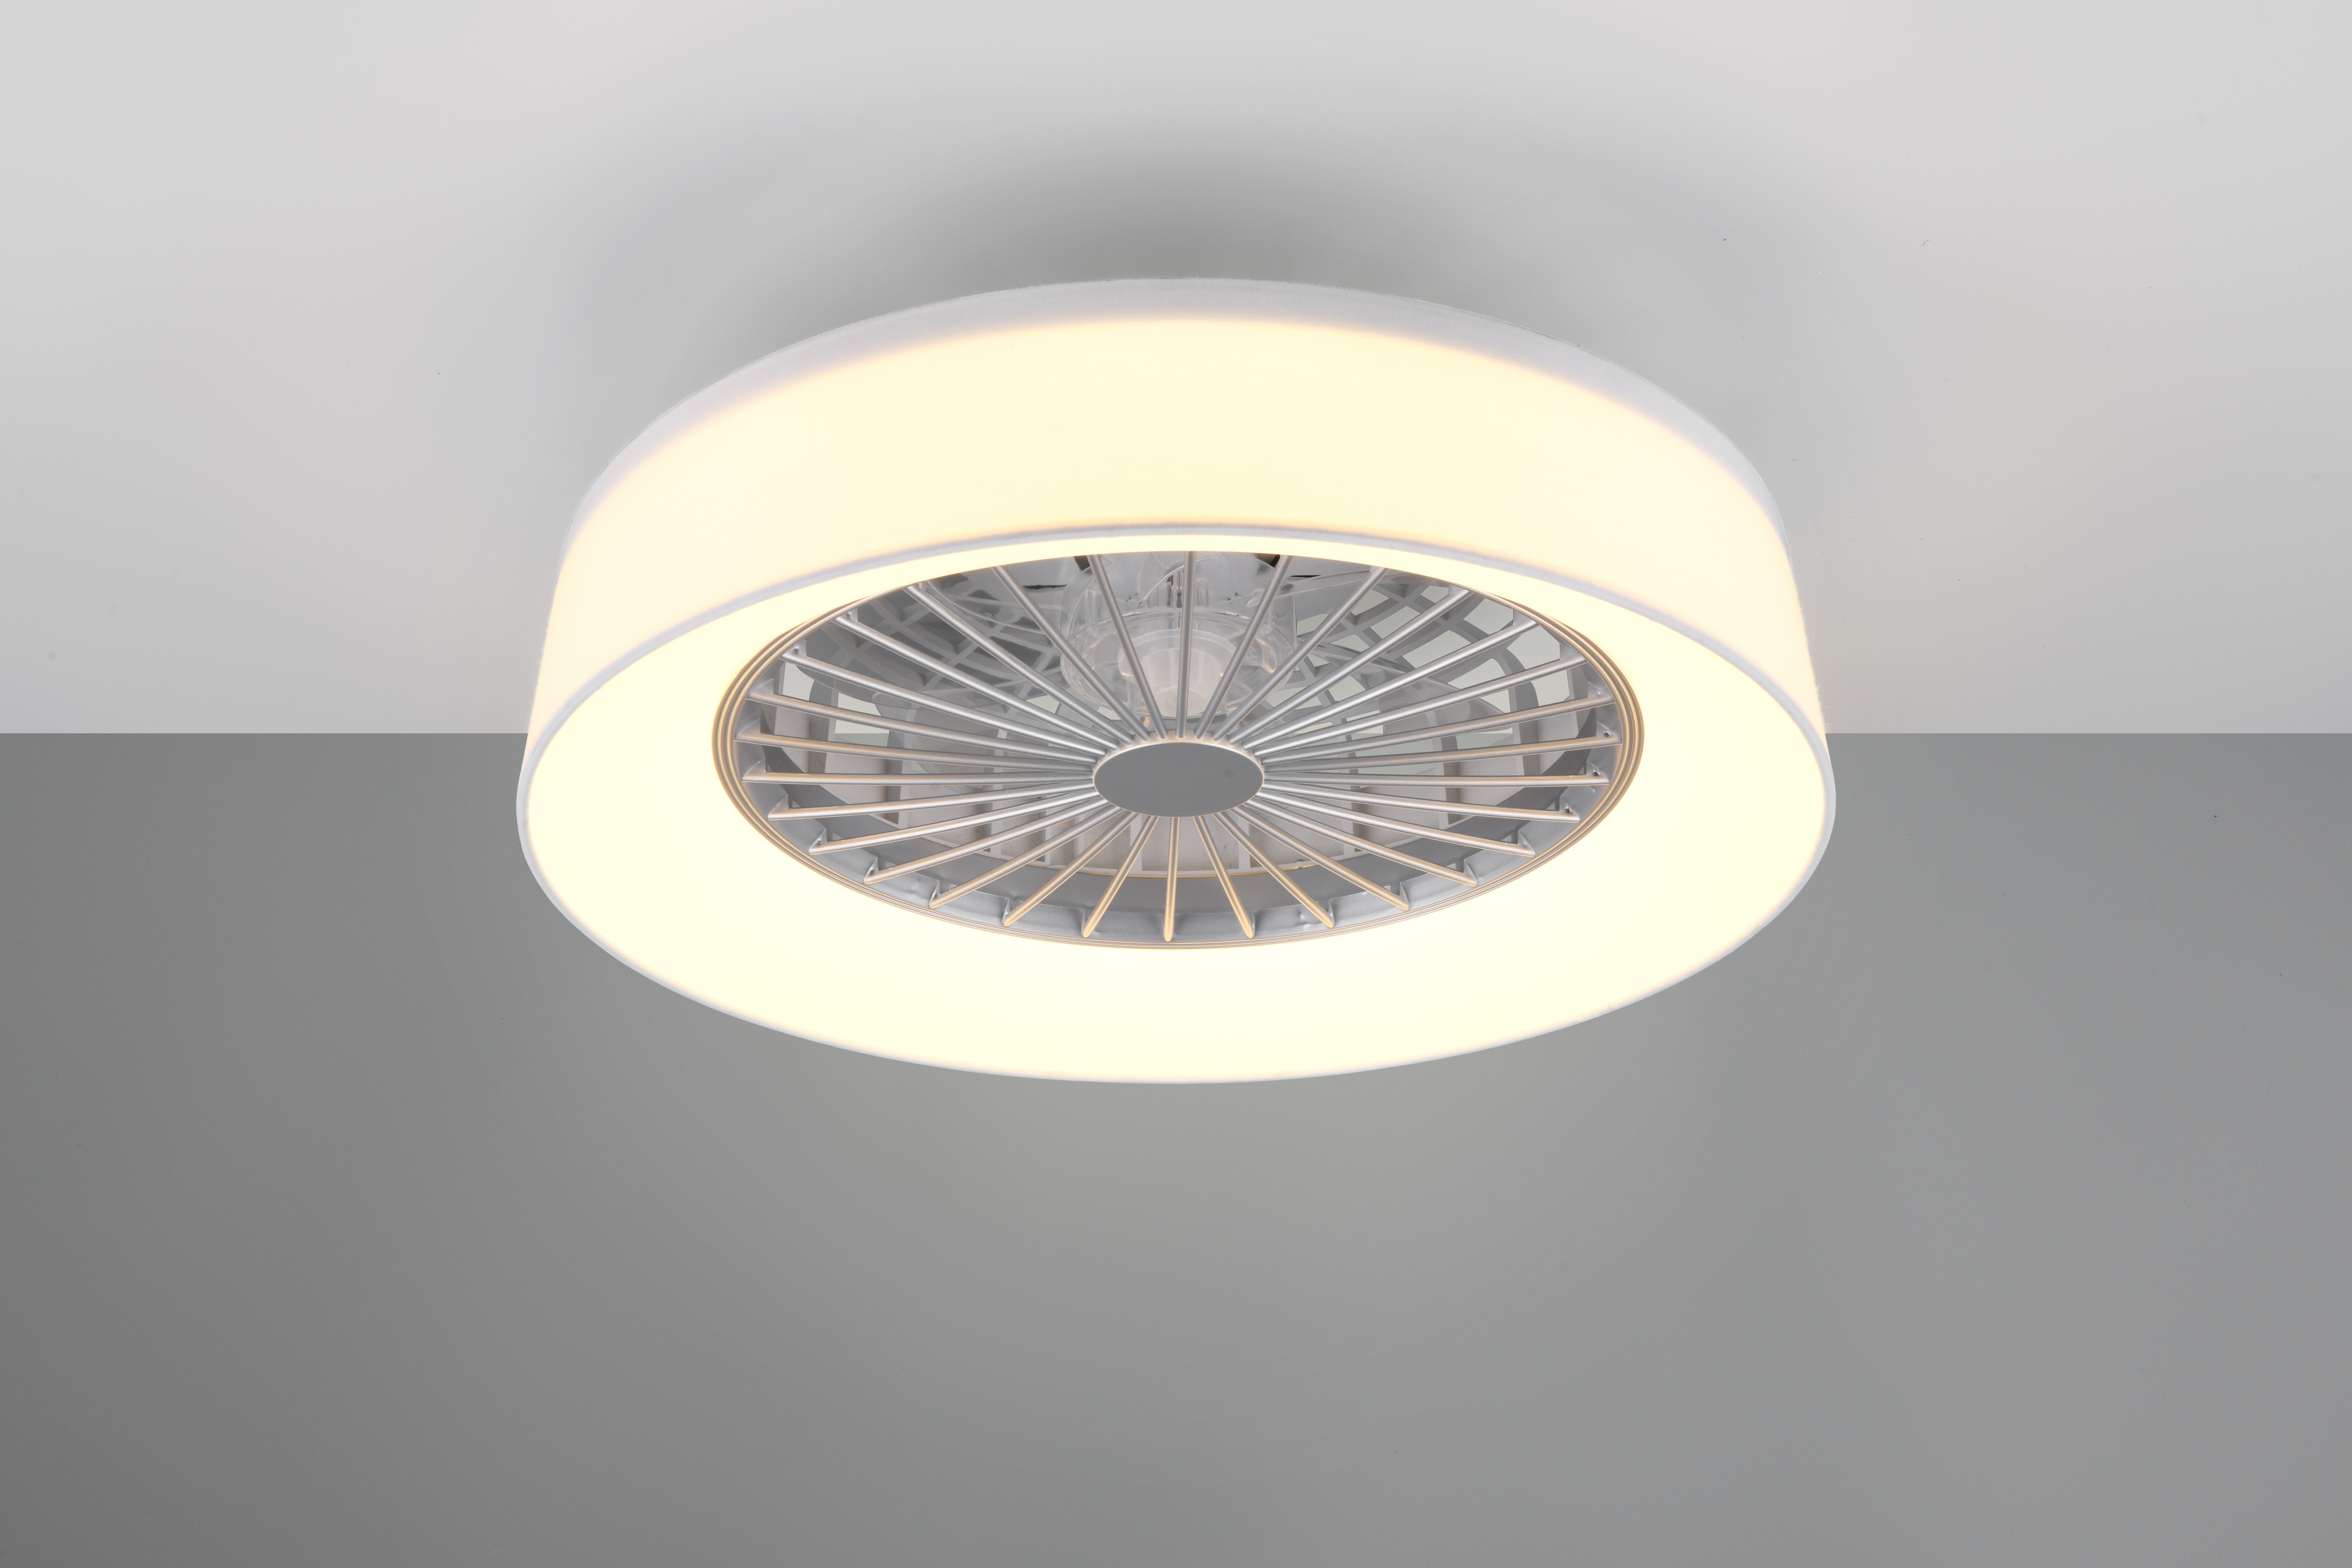 Lampadaire LED, plafonnier, variateur de lumière à bouton-poussoir,  changeur de couleur, hauteur 180 cm